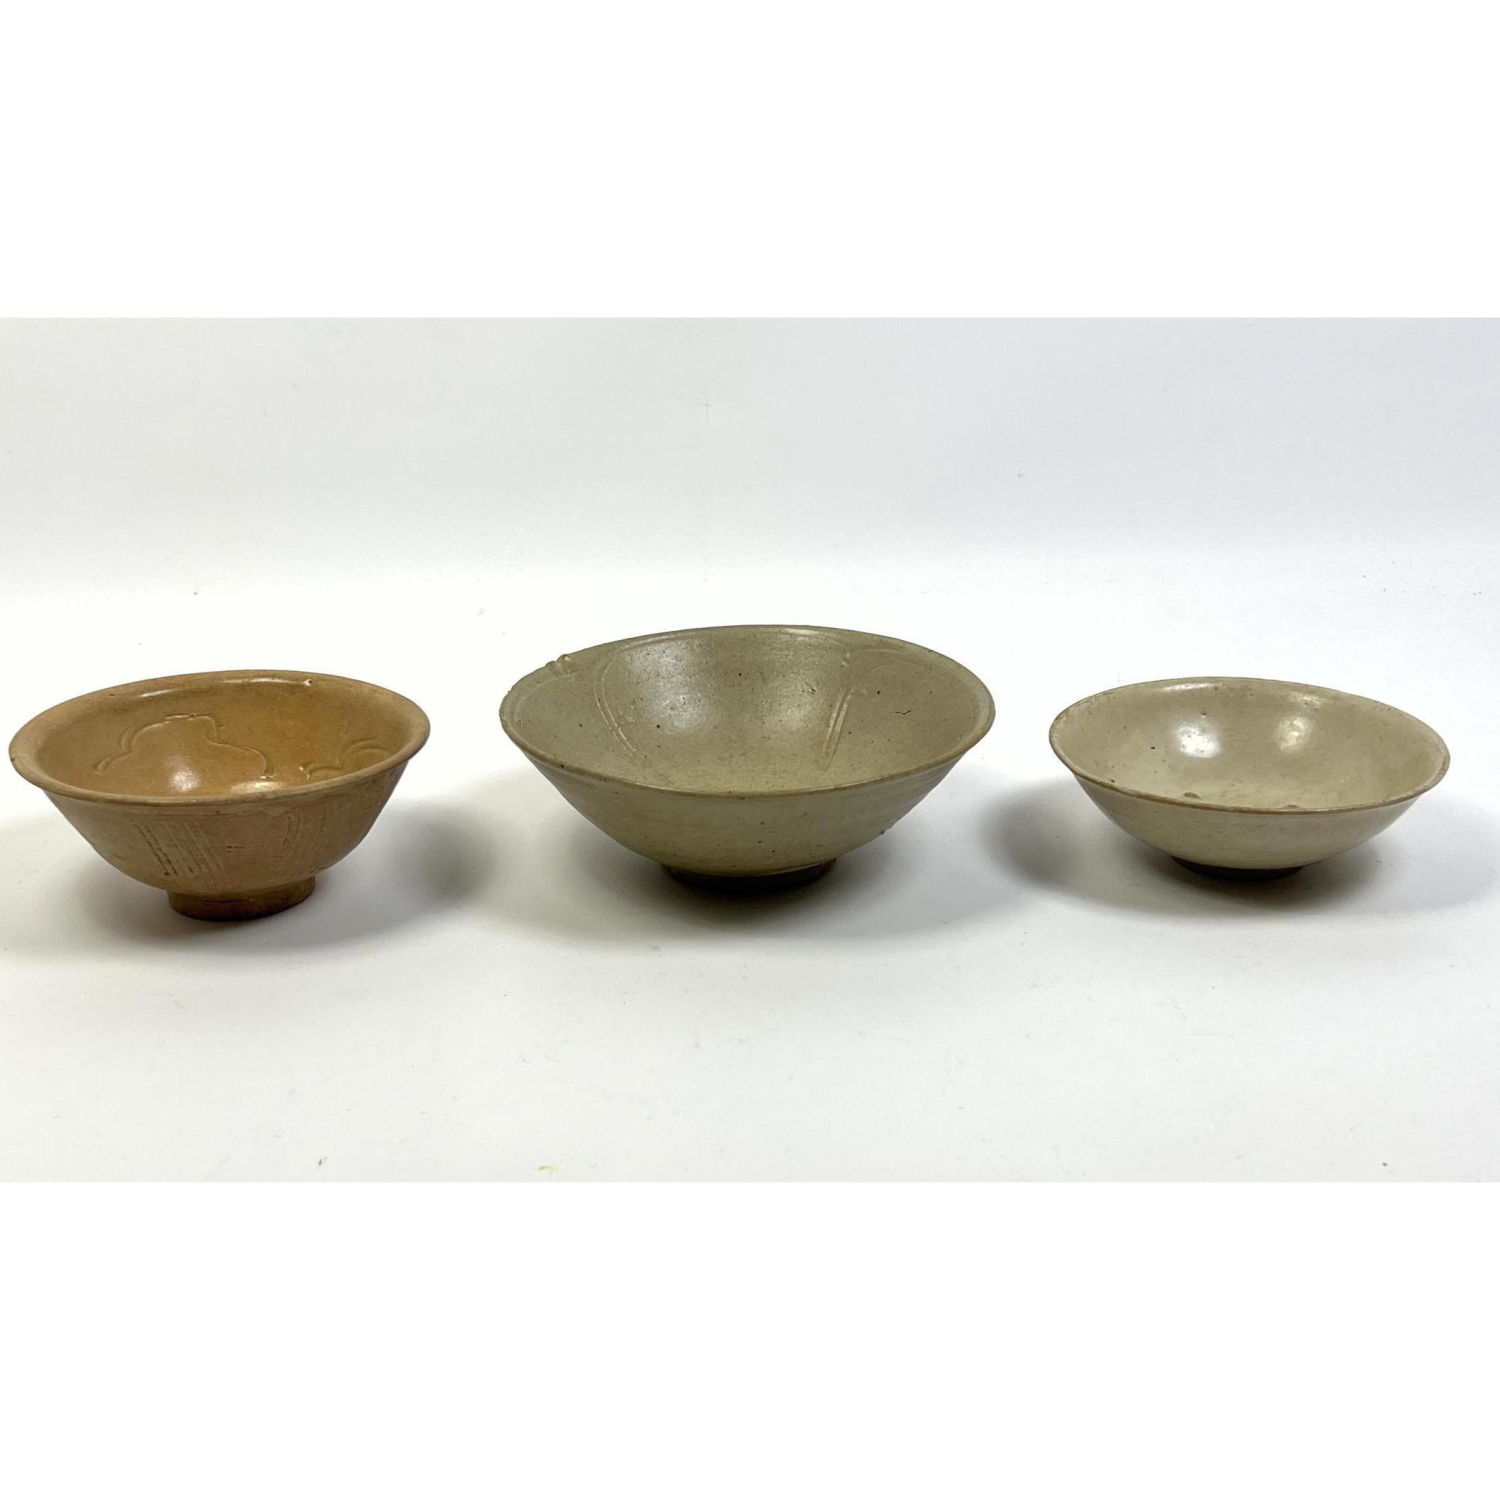 3pcs Chinese Stoneware Bowls. H